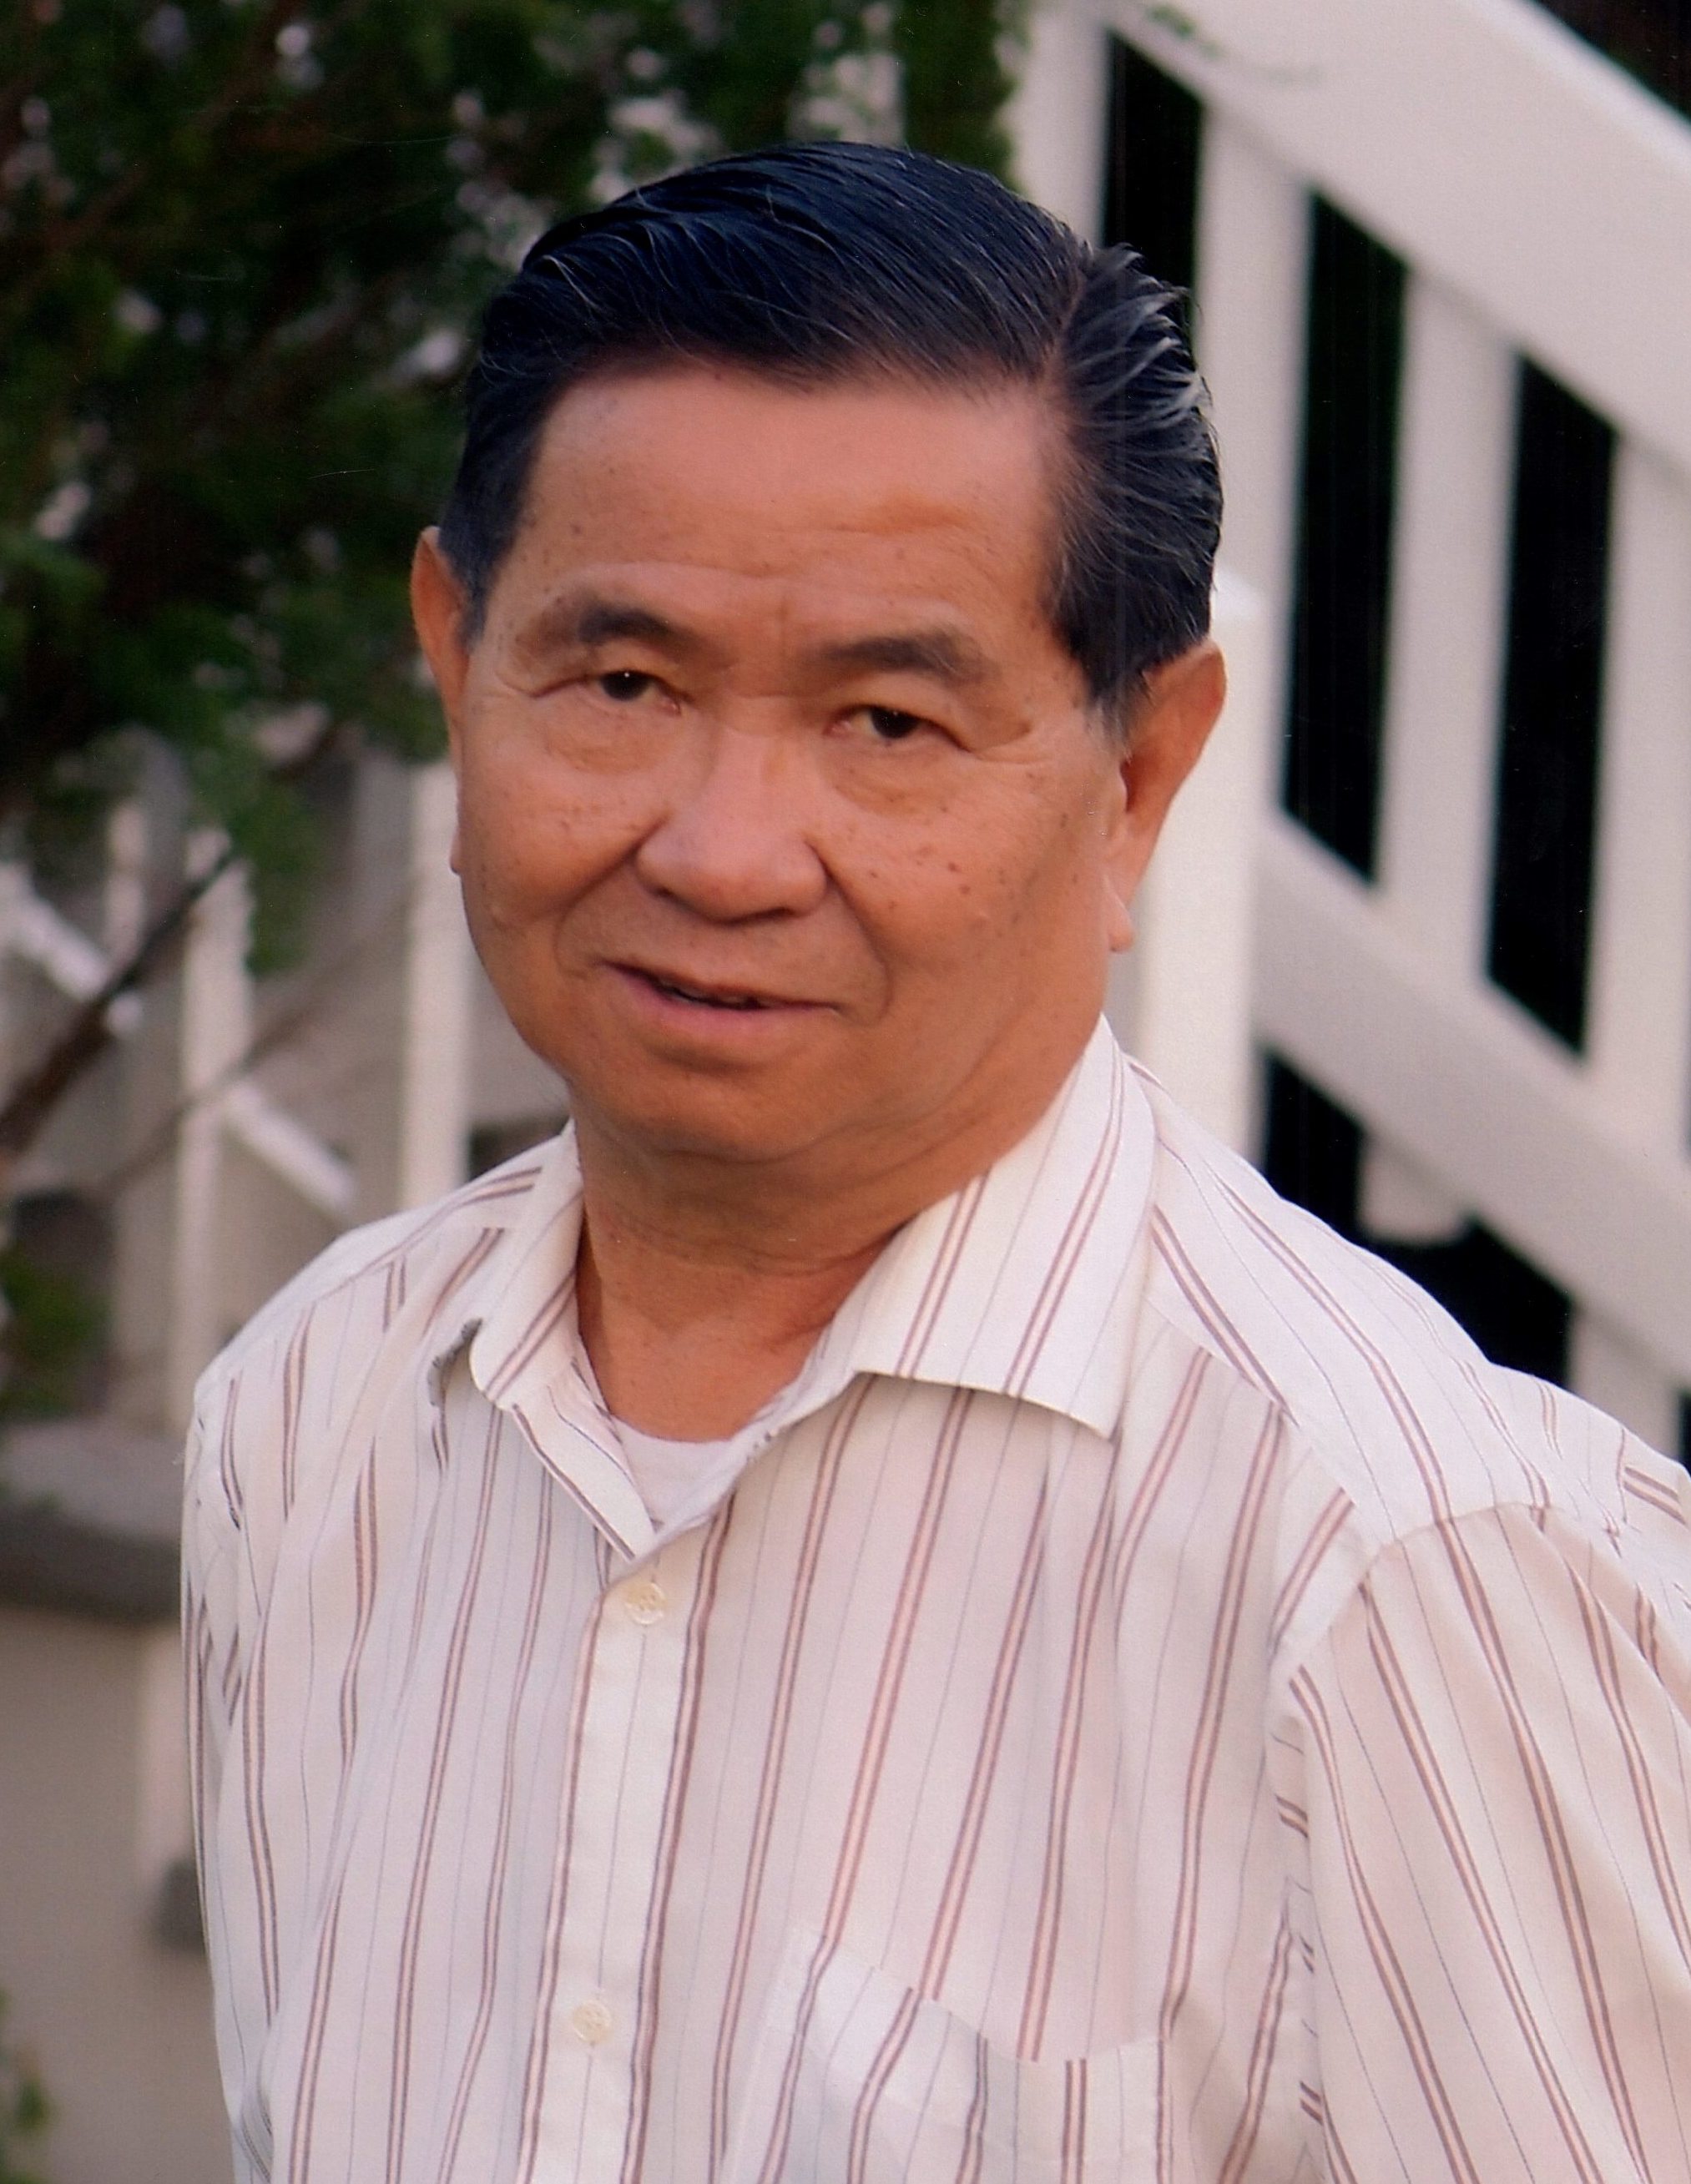 Mr. Ting Sheng Wong